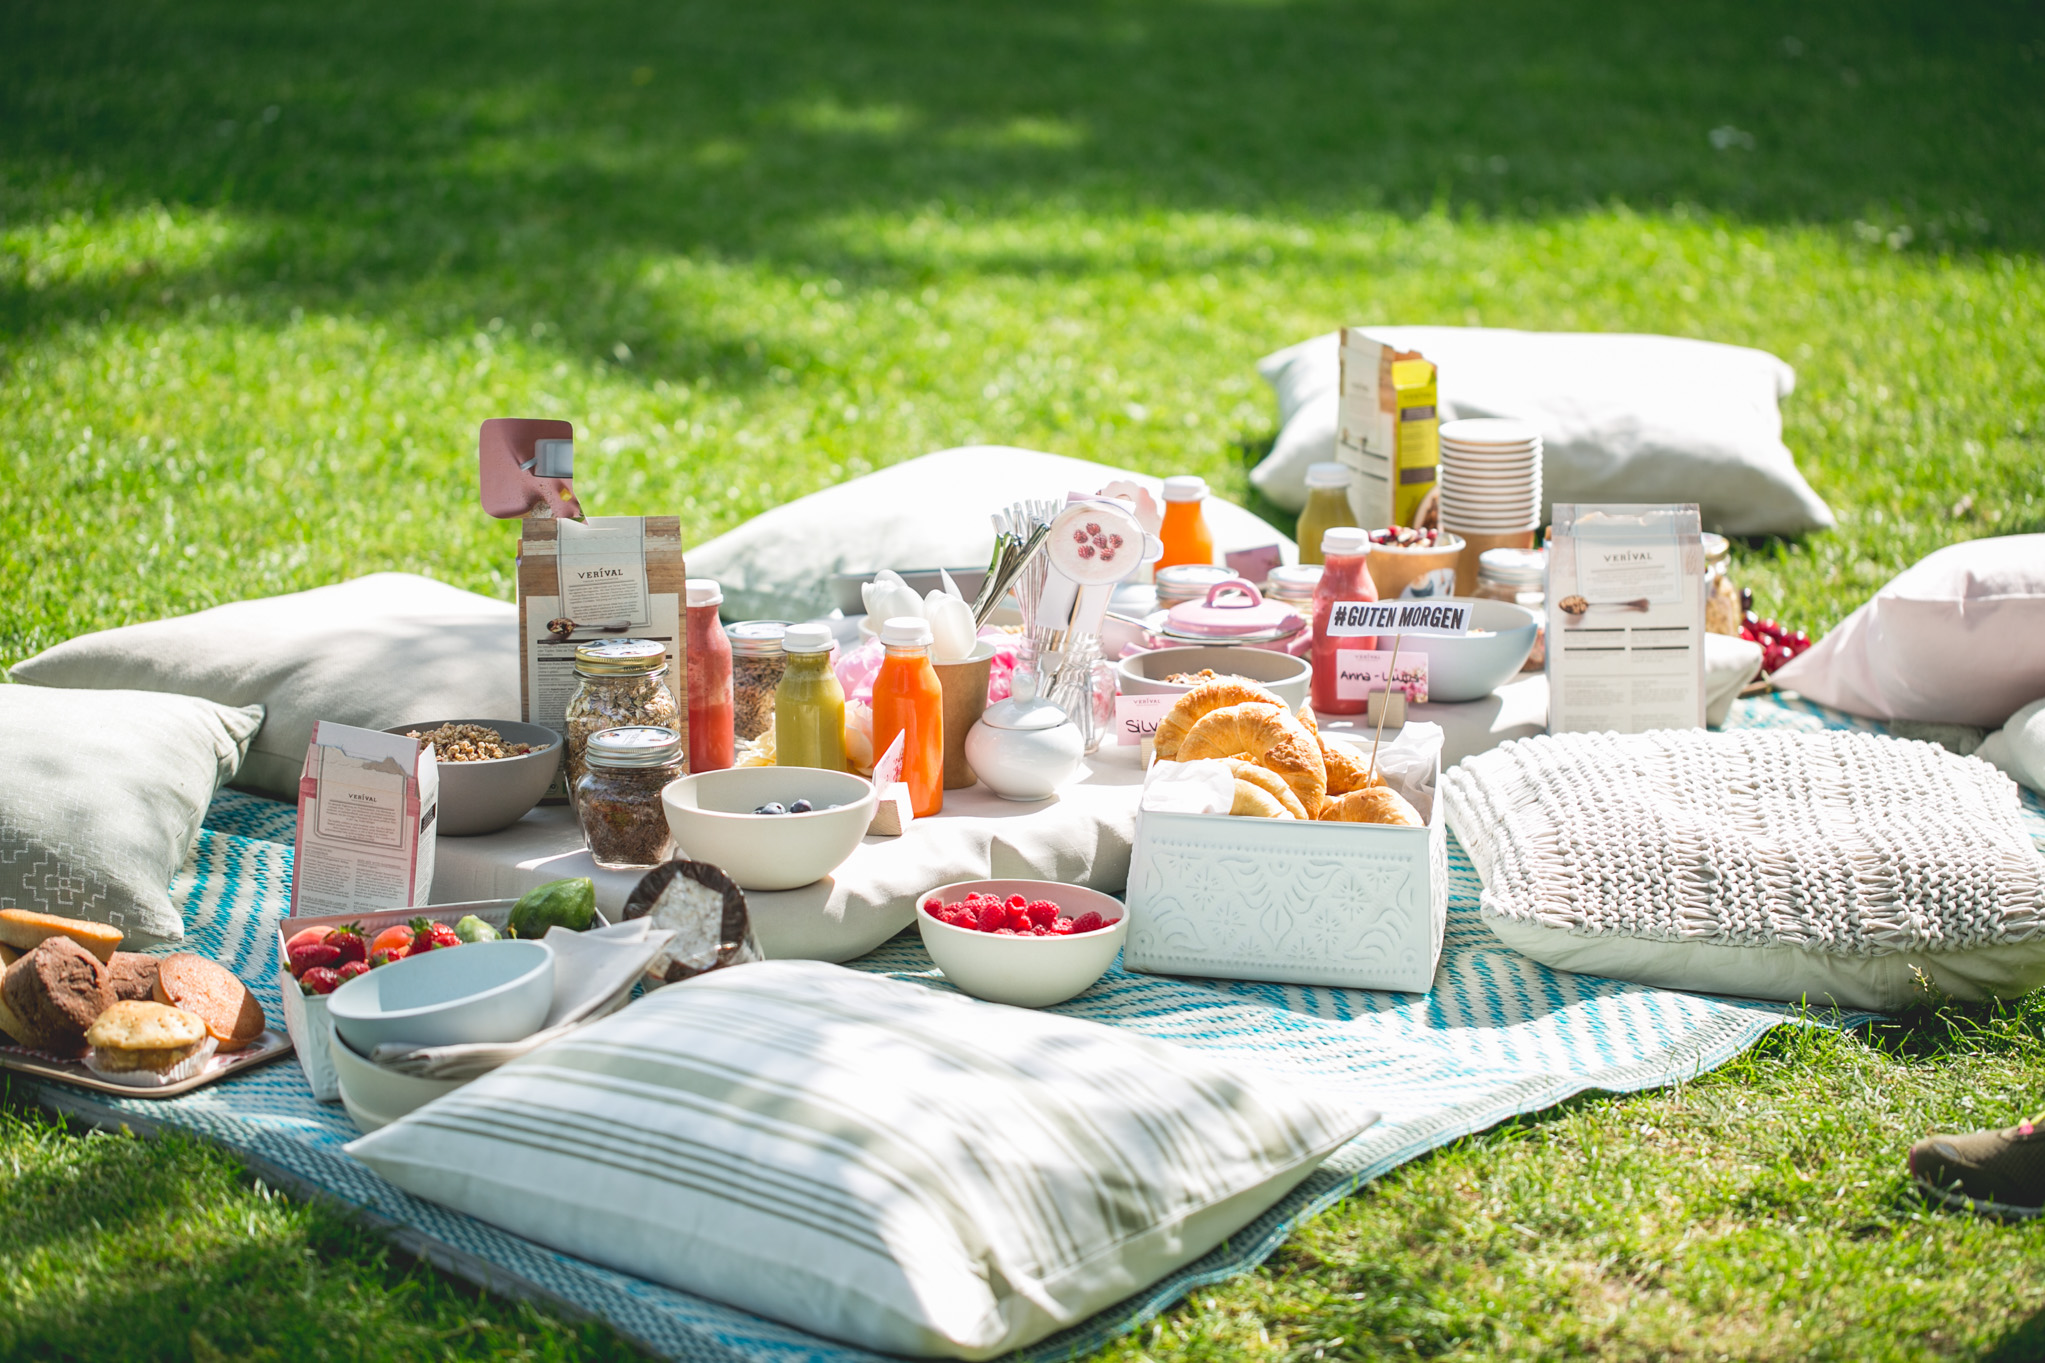 Alles, was es für ein Frühstücks-Picknick braucht © Florence Stoiber